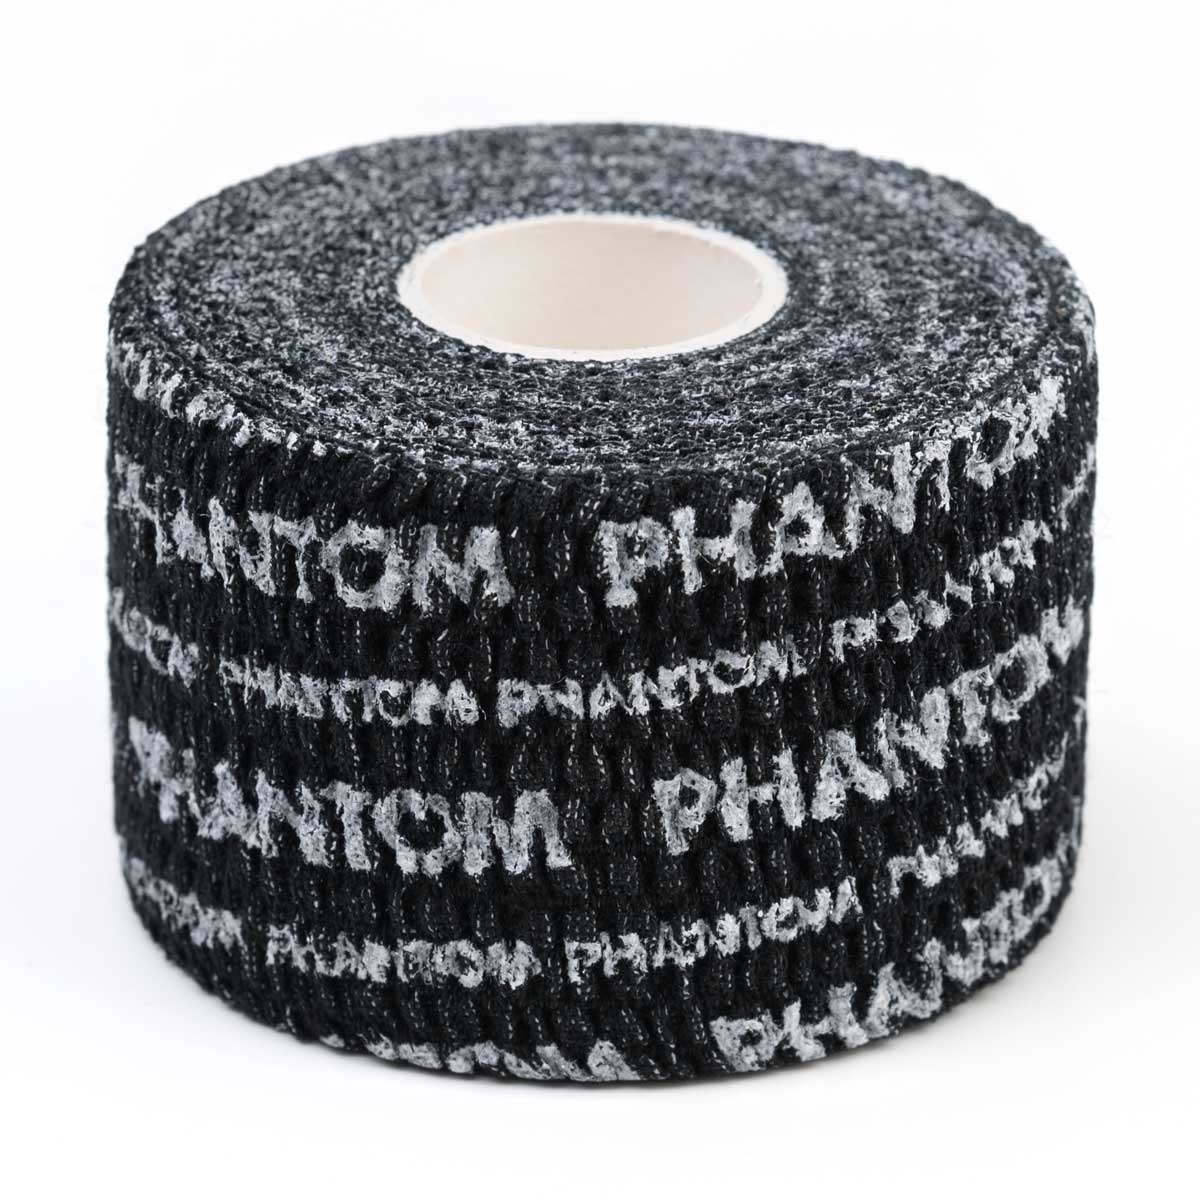 Phantom Grip Tape für Kampfsport und Fitness in der Farbe schwarz. Ultimativer Halt der Bandagen und an der Hantel.